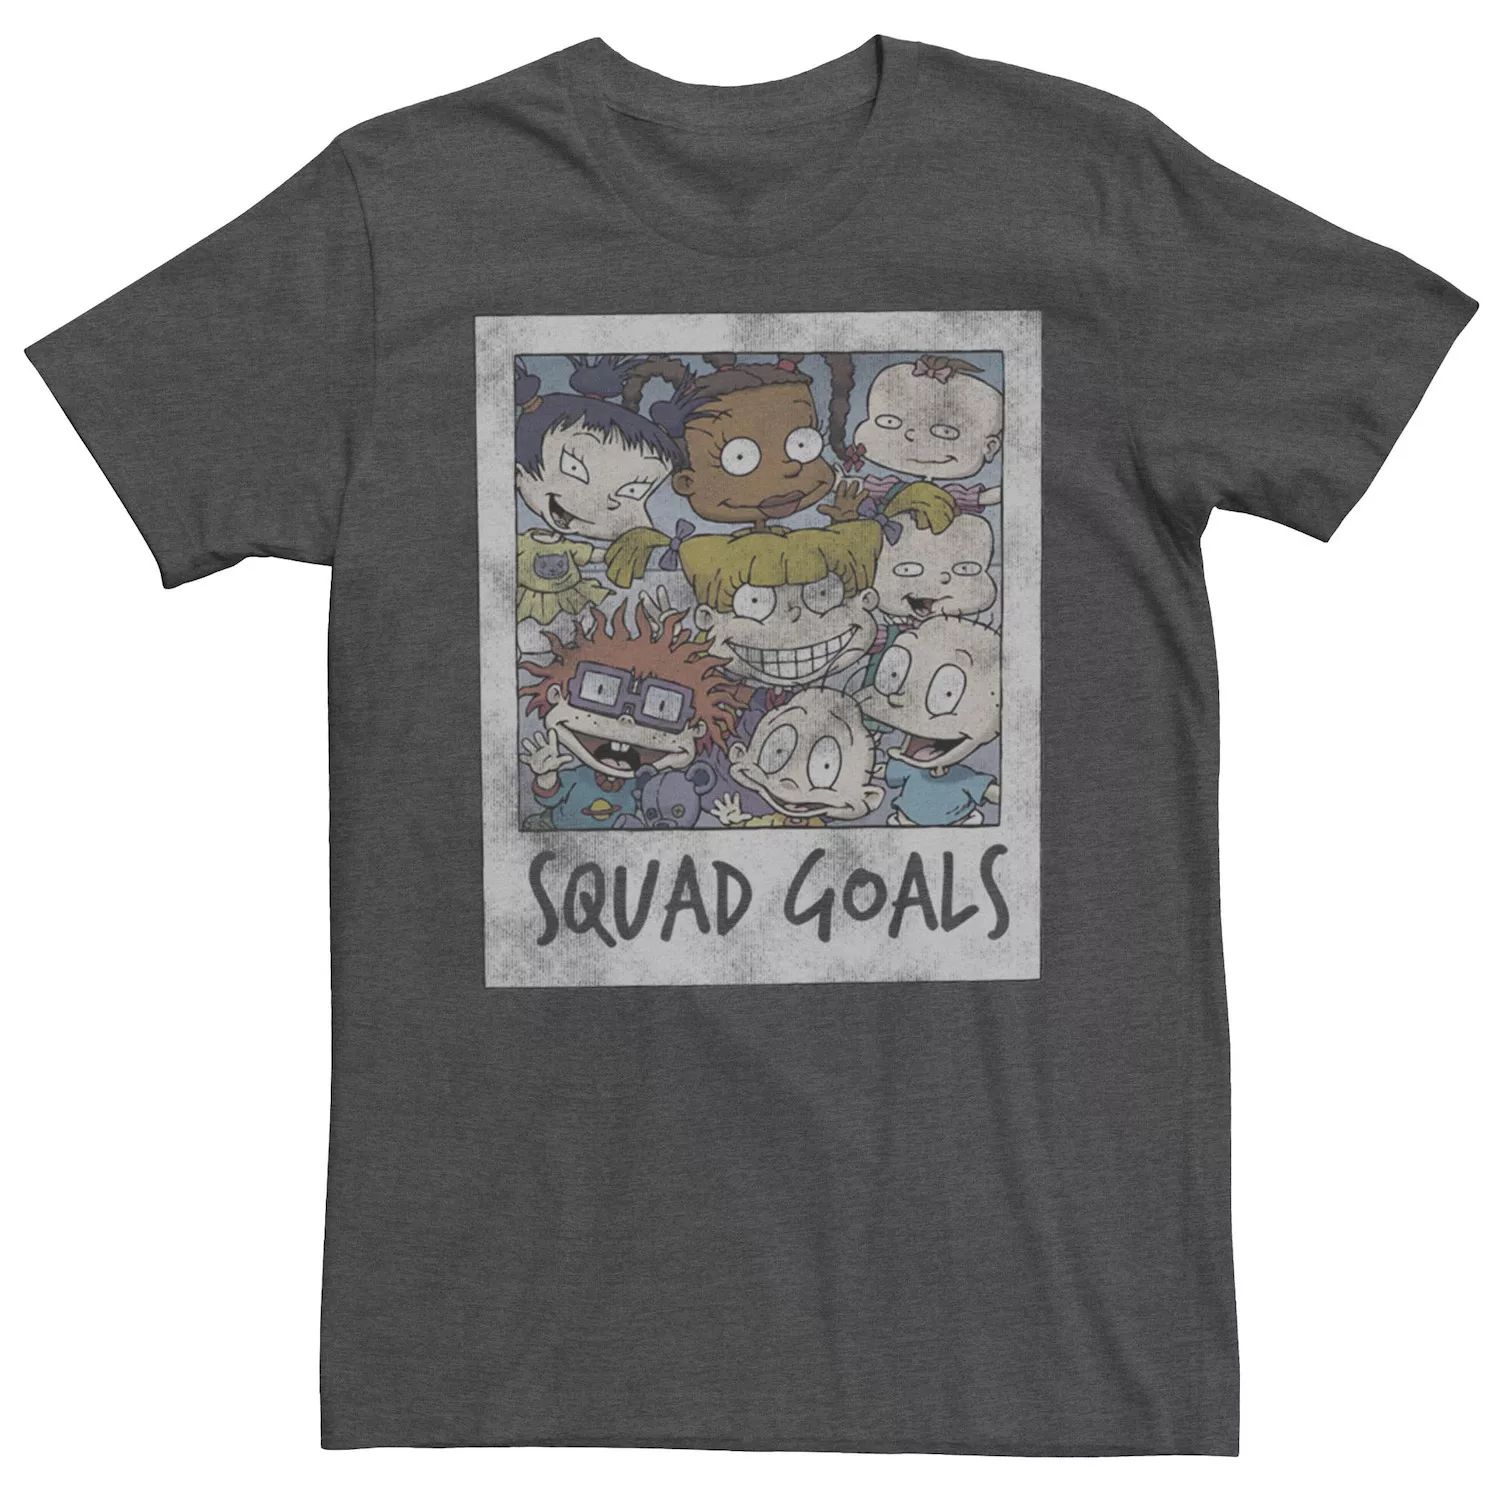 Мужская футболка Rugrats Squad Goals с фотографией Licensed Character